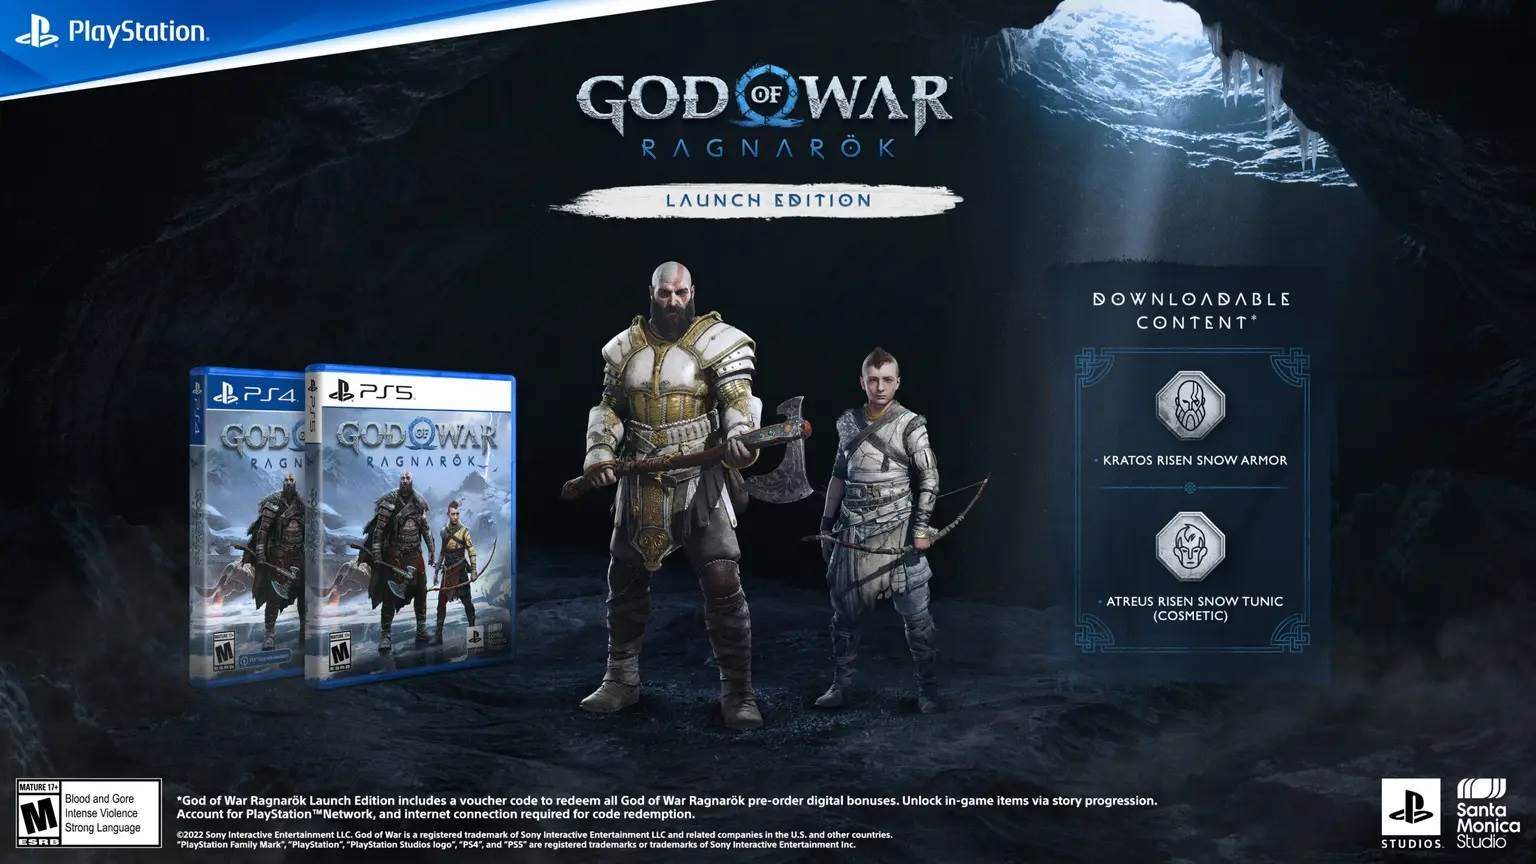  God of War Ragnarök – Launch Edition.jpg 